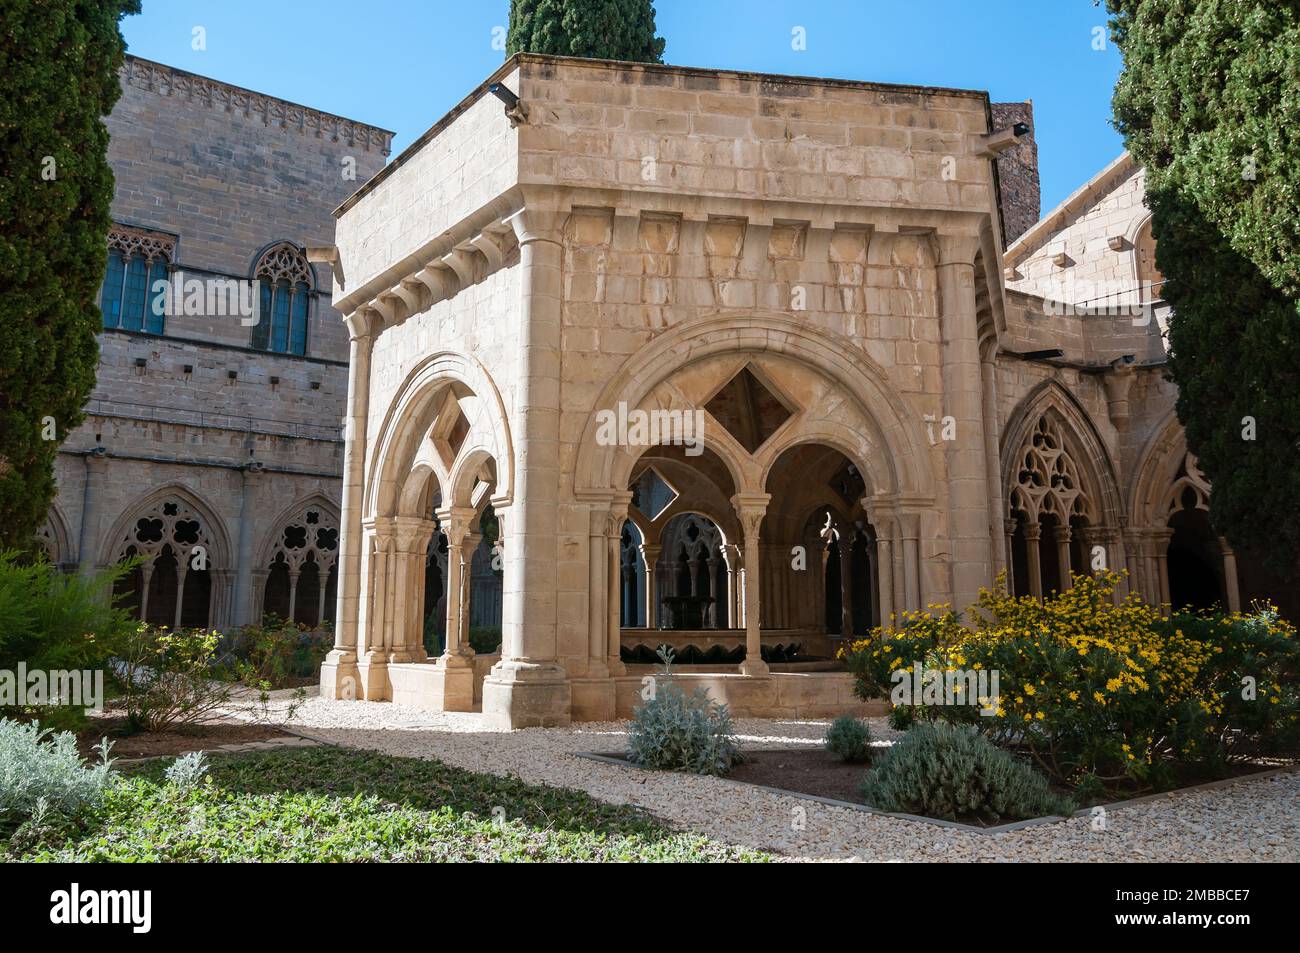 Cloister of Royal Abbey of Santa Maria de Poblet. Tarragona, Catalonia, Spain Stock Photo